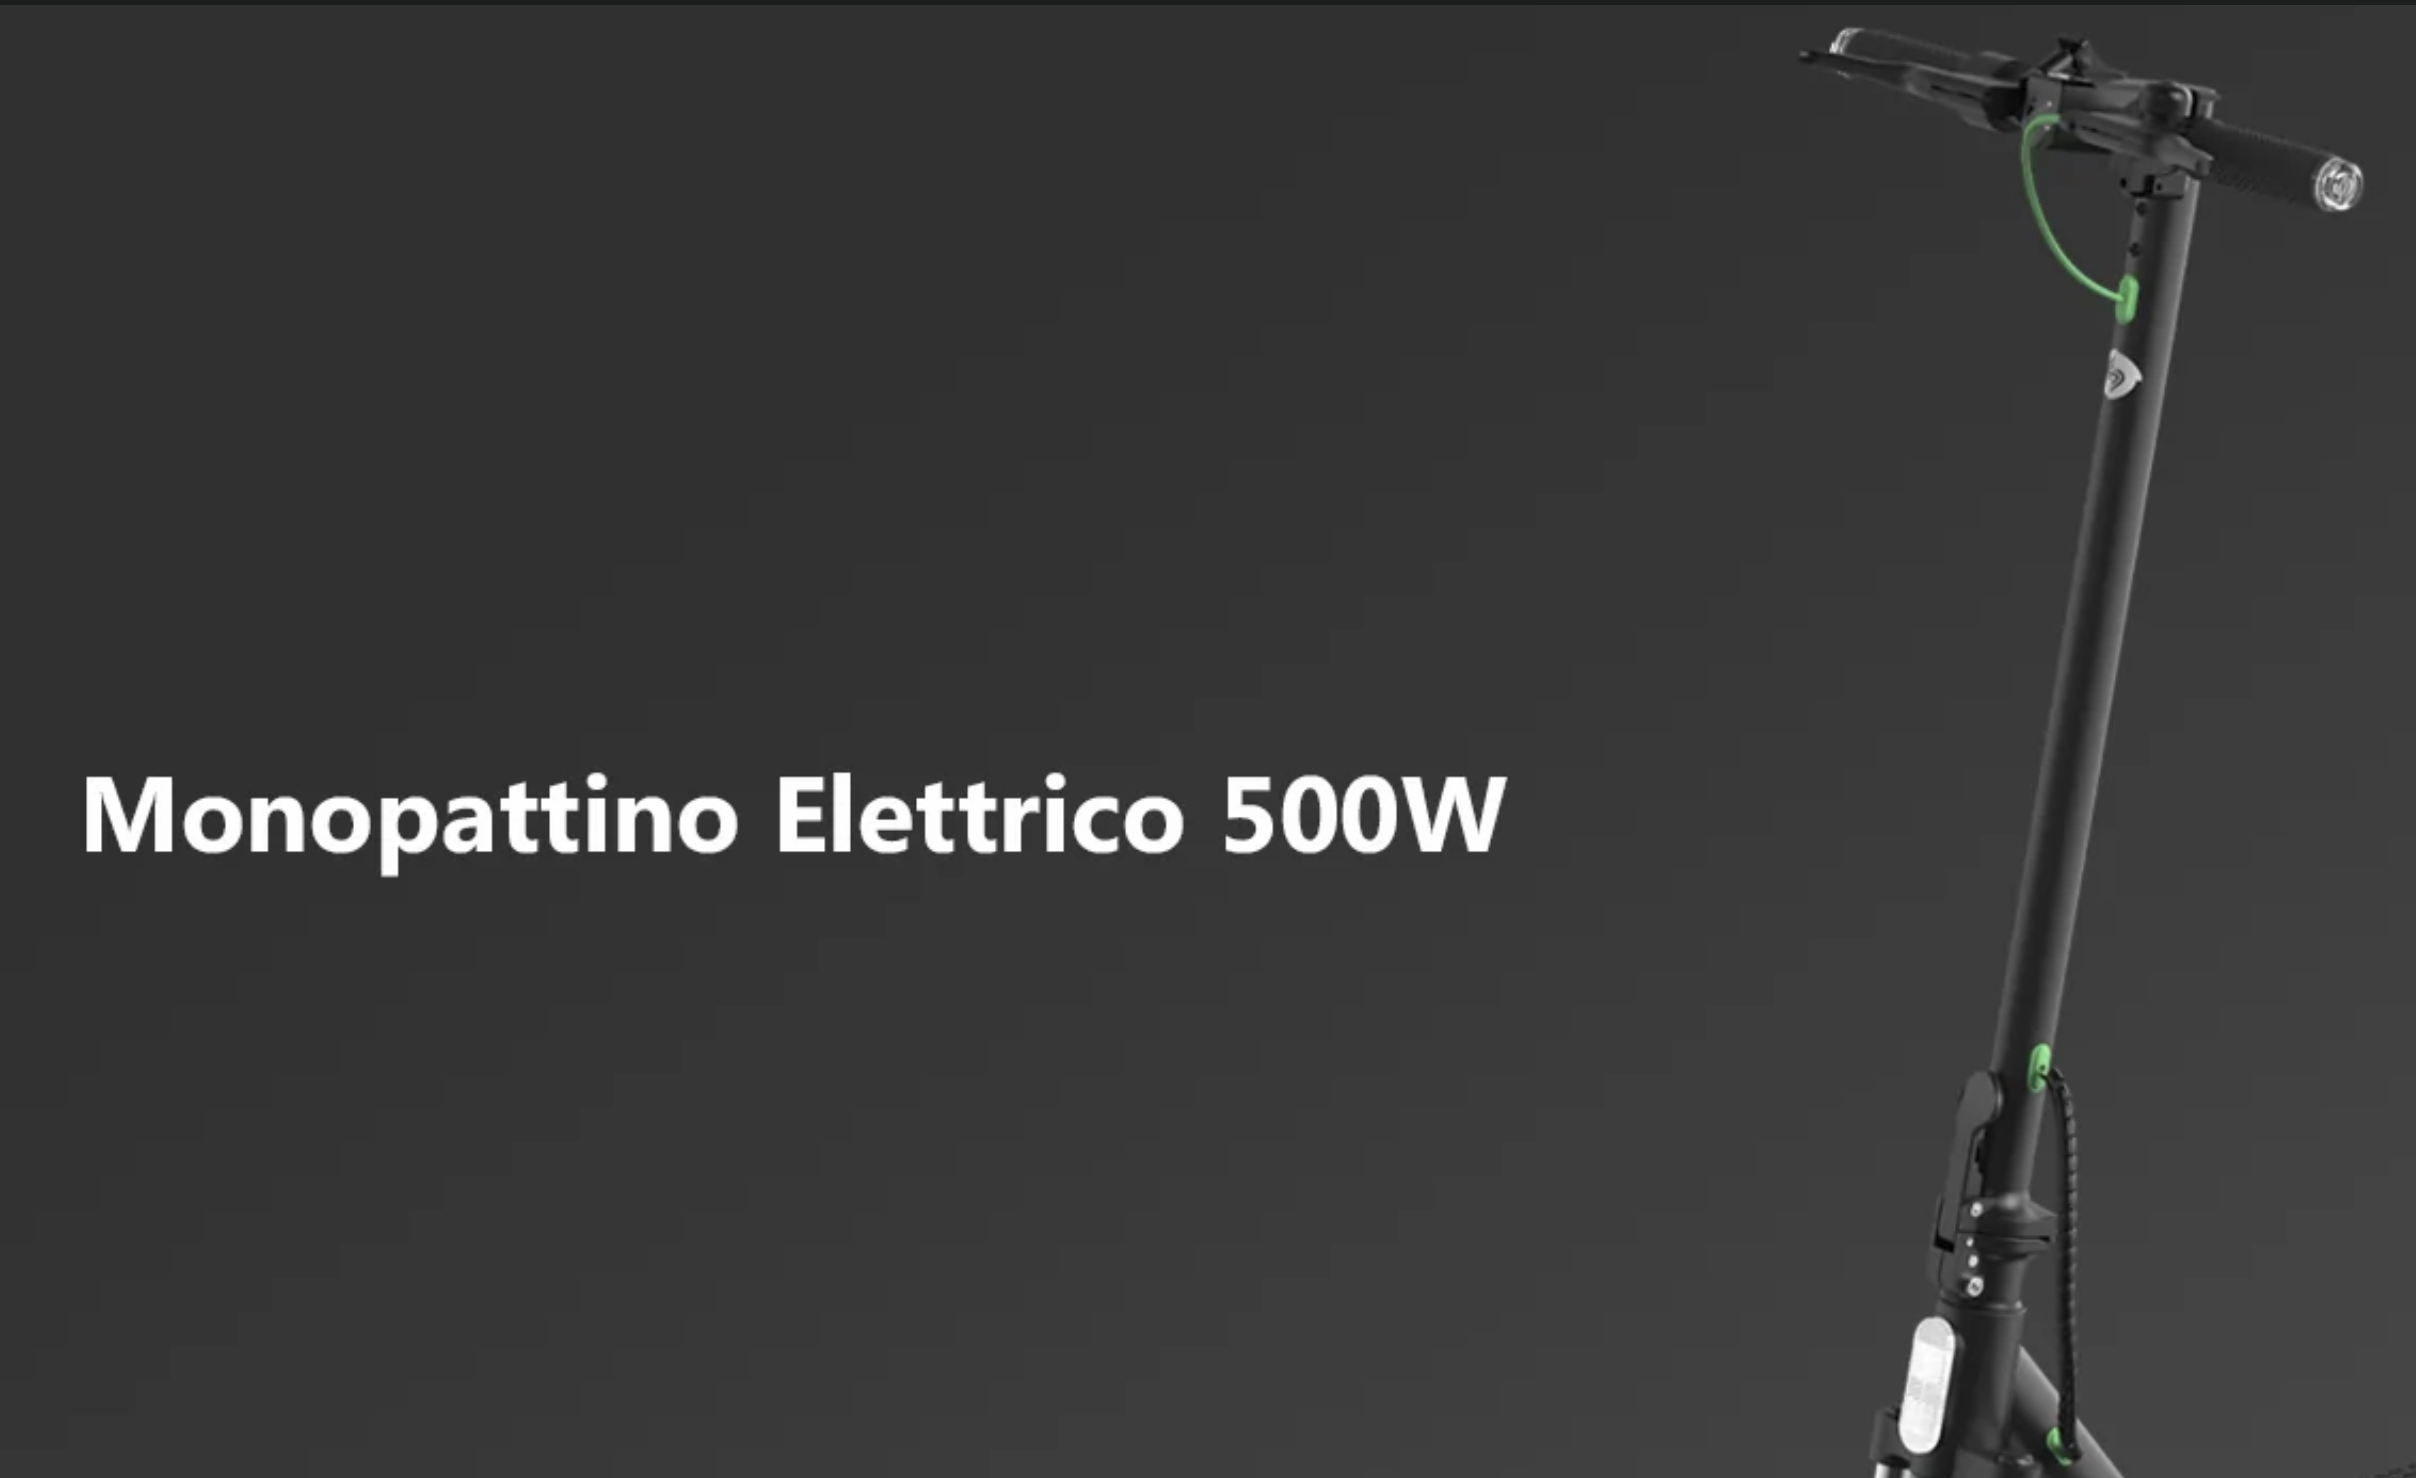 Monopattino Elettrico S9Pro aggiornato con marchio isinwheel